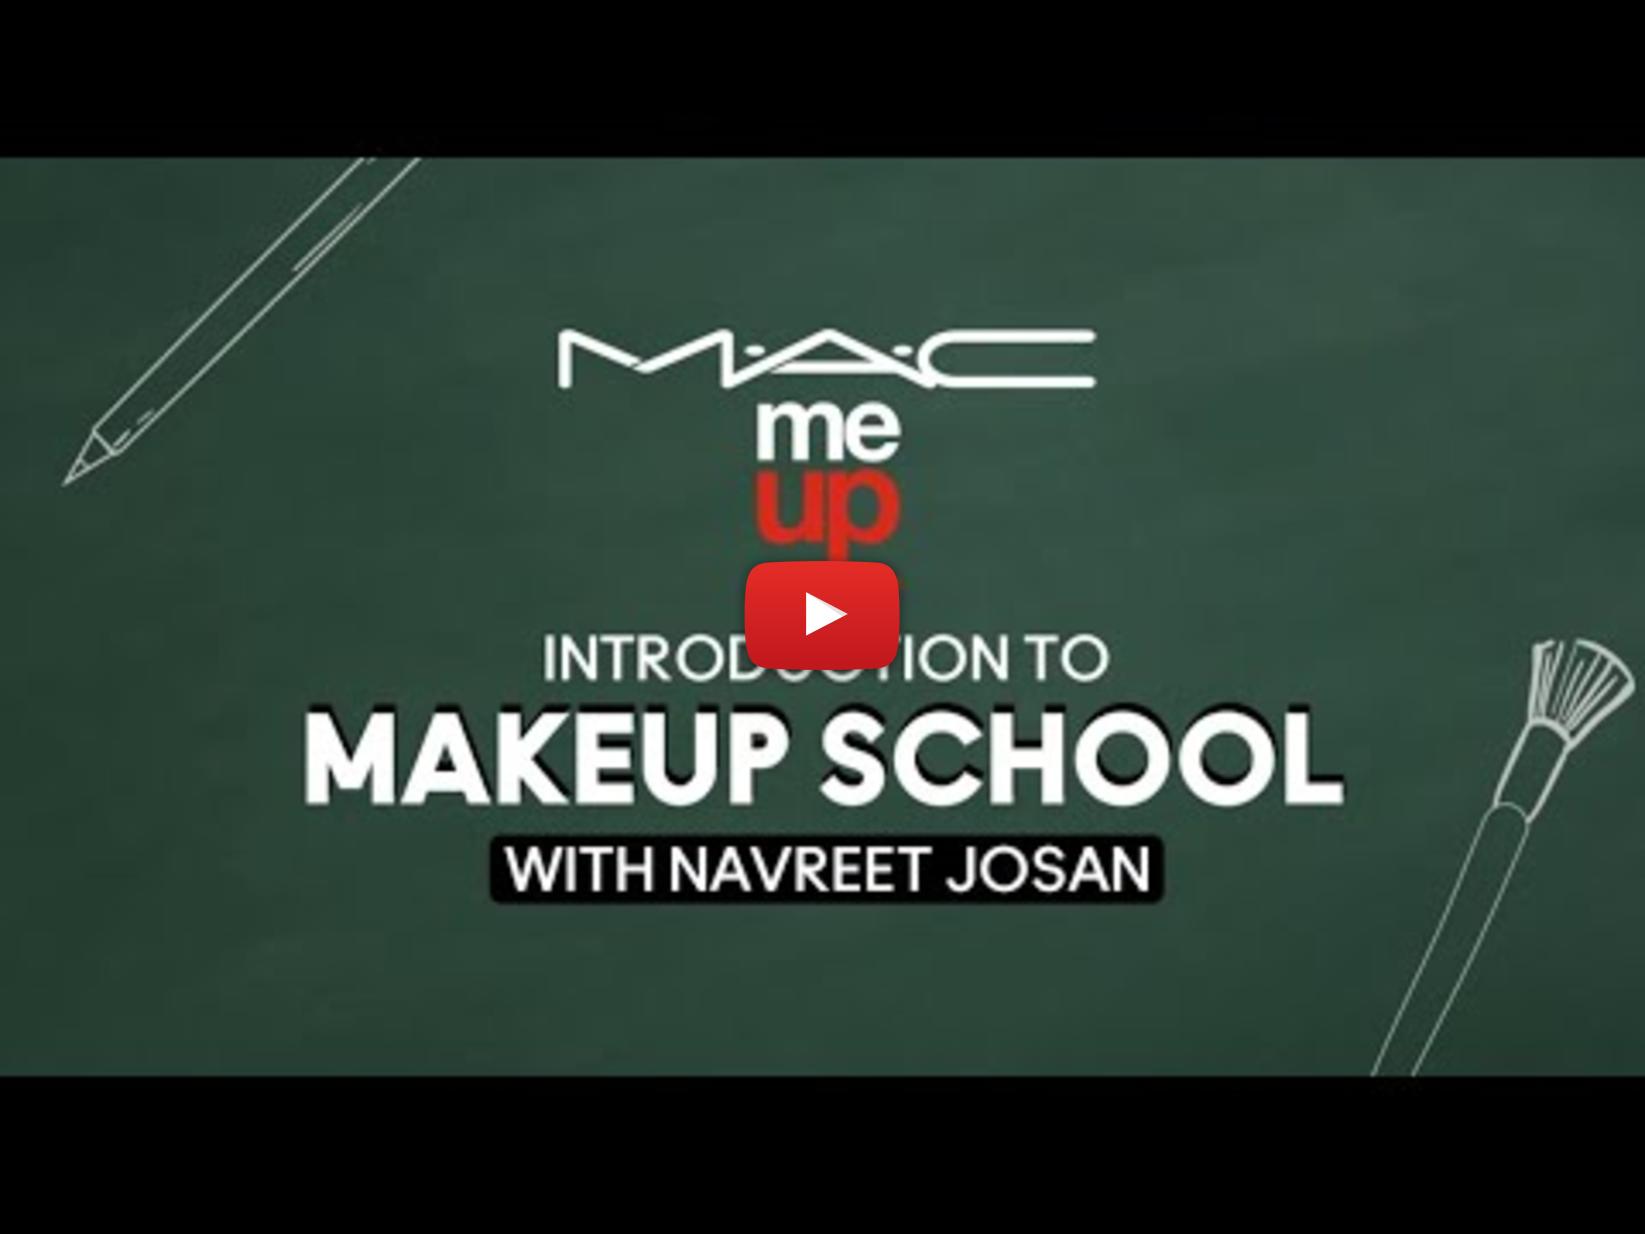 M.A.C Makeup School by